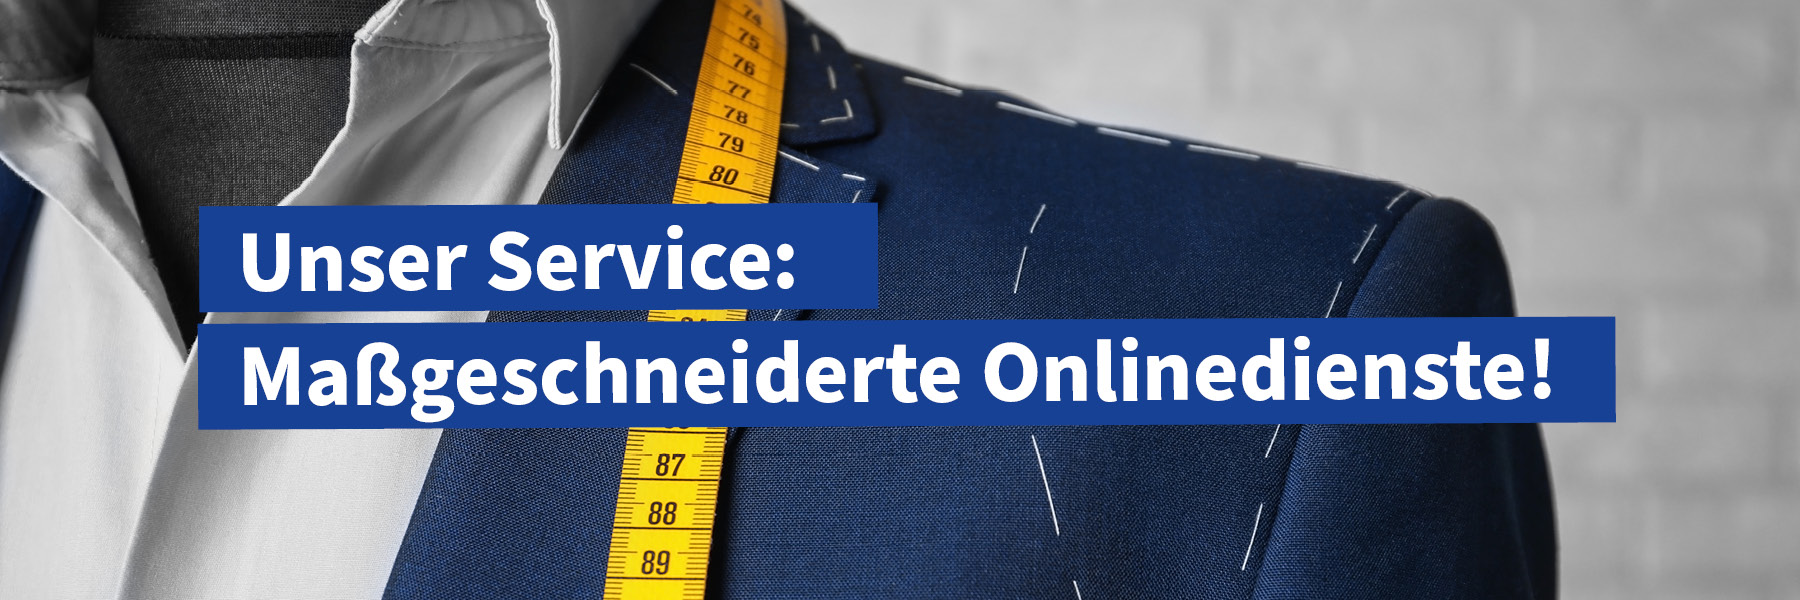 Unser Service: Maßgeschneiderte Onlinedienste!